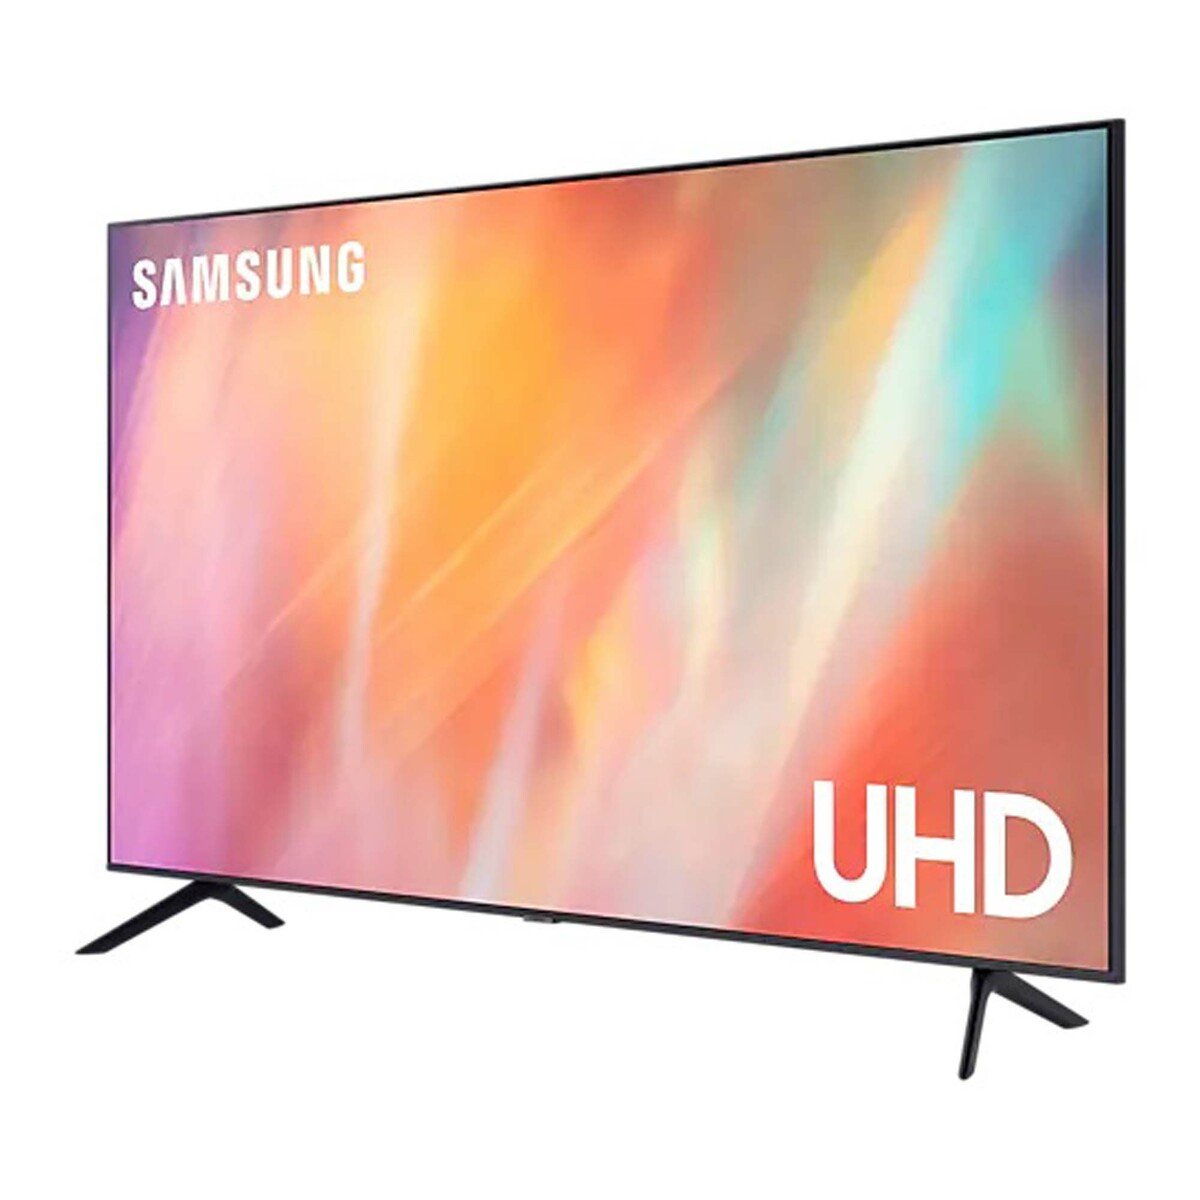 Samsung  Ultra HD  TV UA55AU7000UXZN 55inch